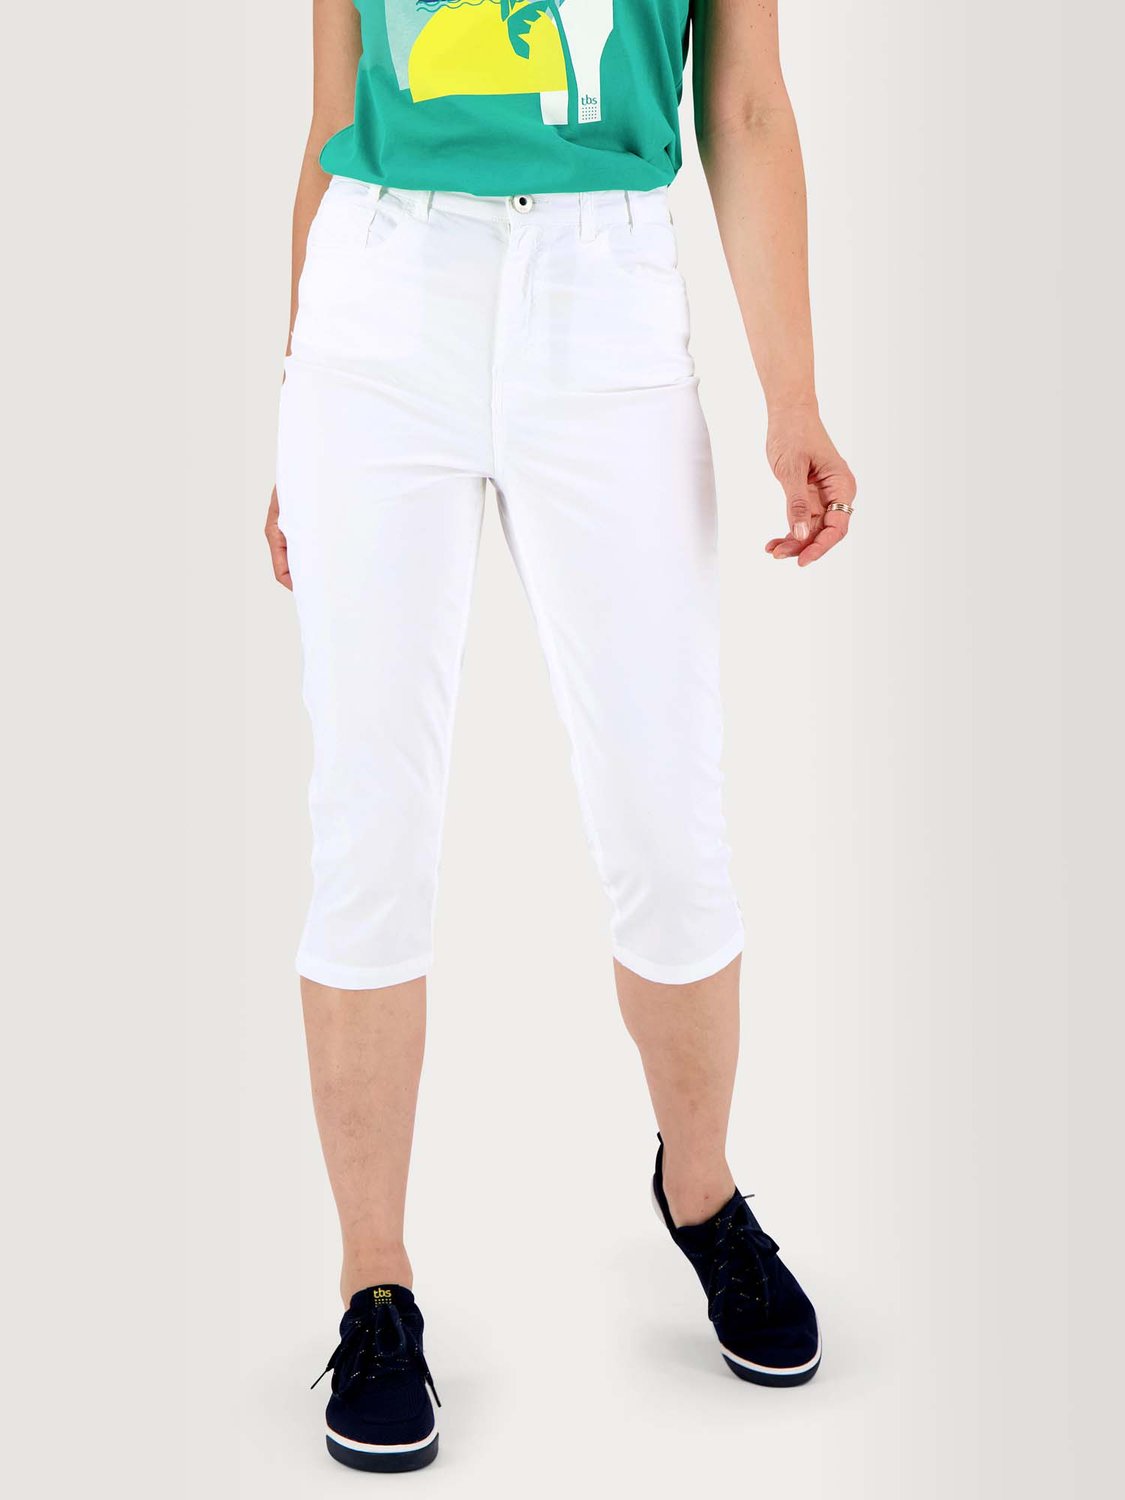 Corsaire Femme Coton Stretch Blanc